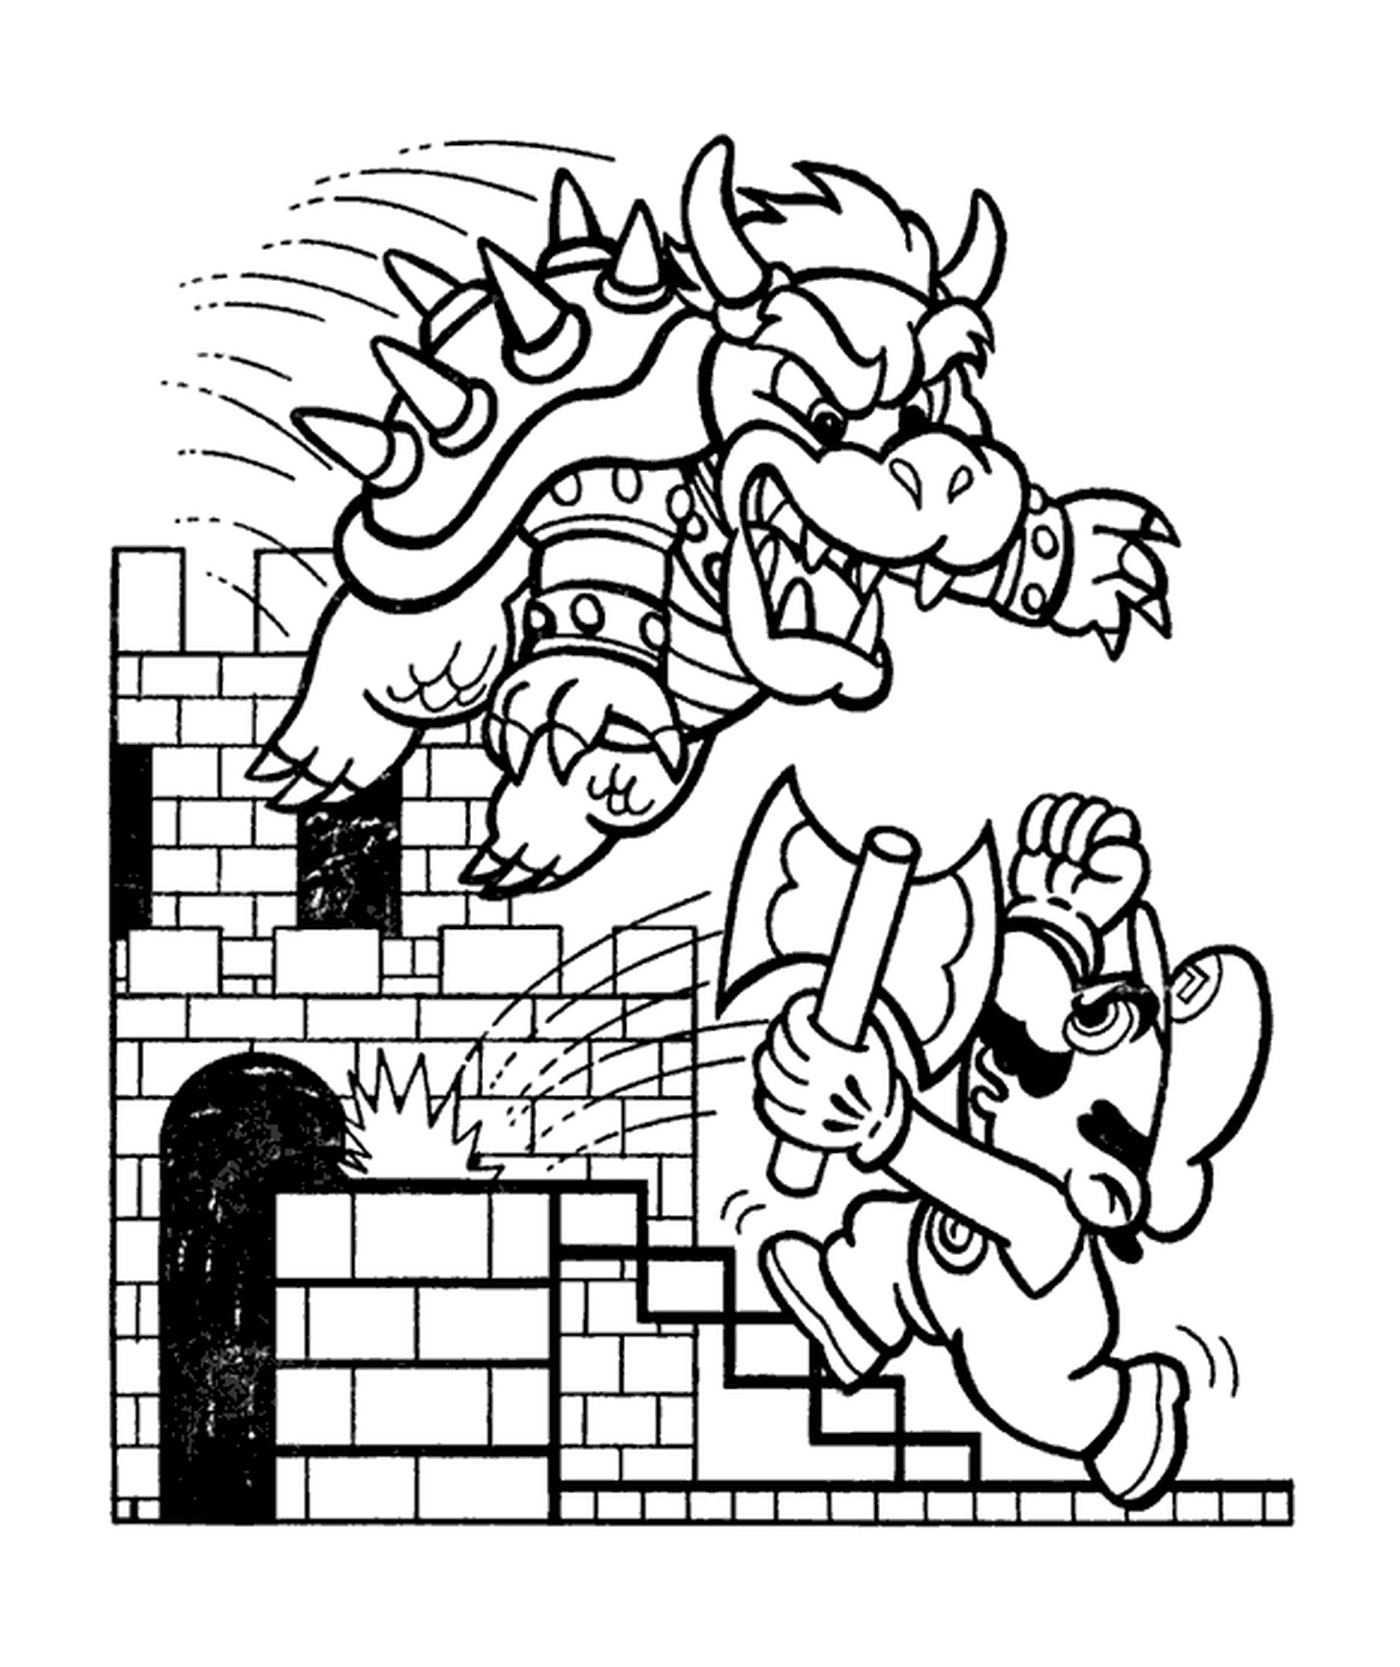  Bowser ataca Mario com fúria 